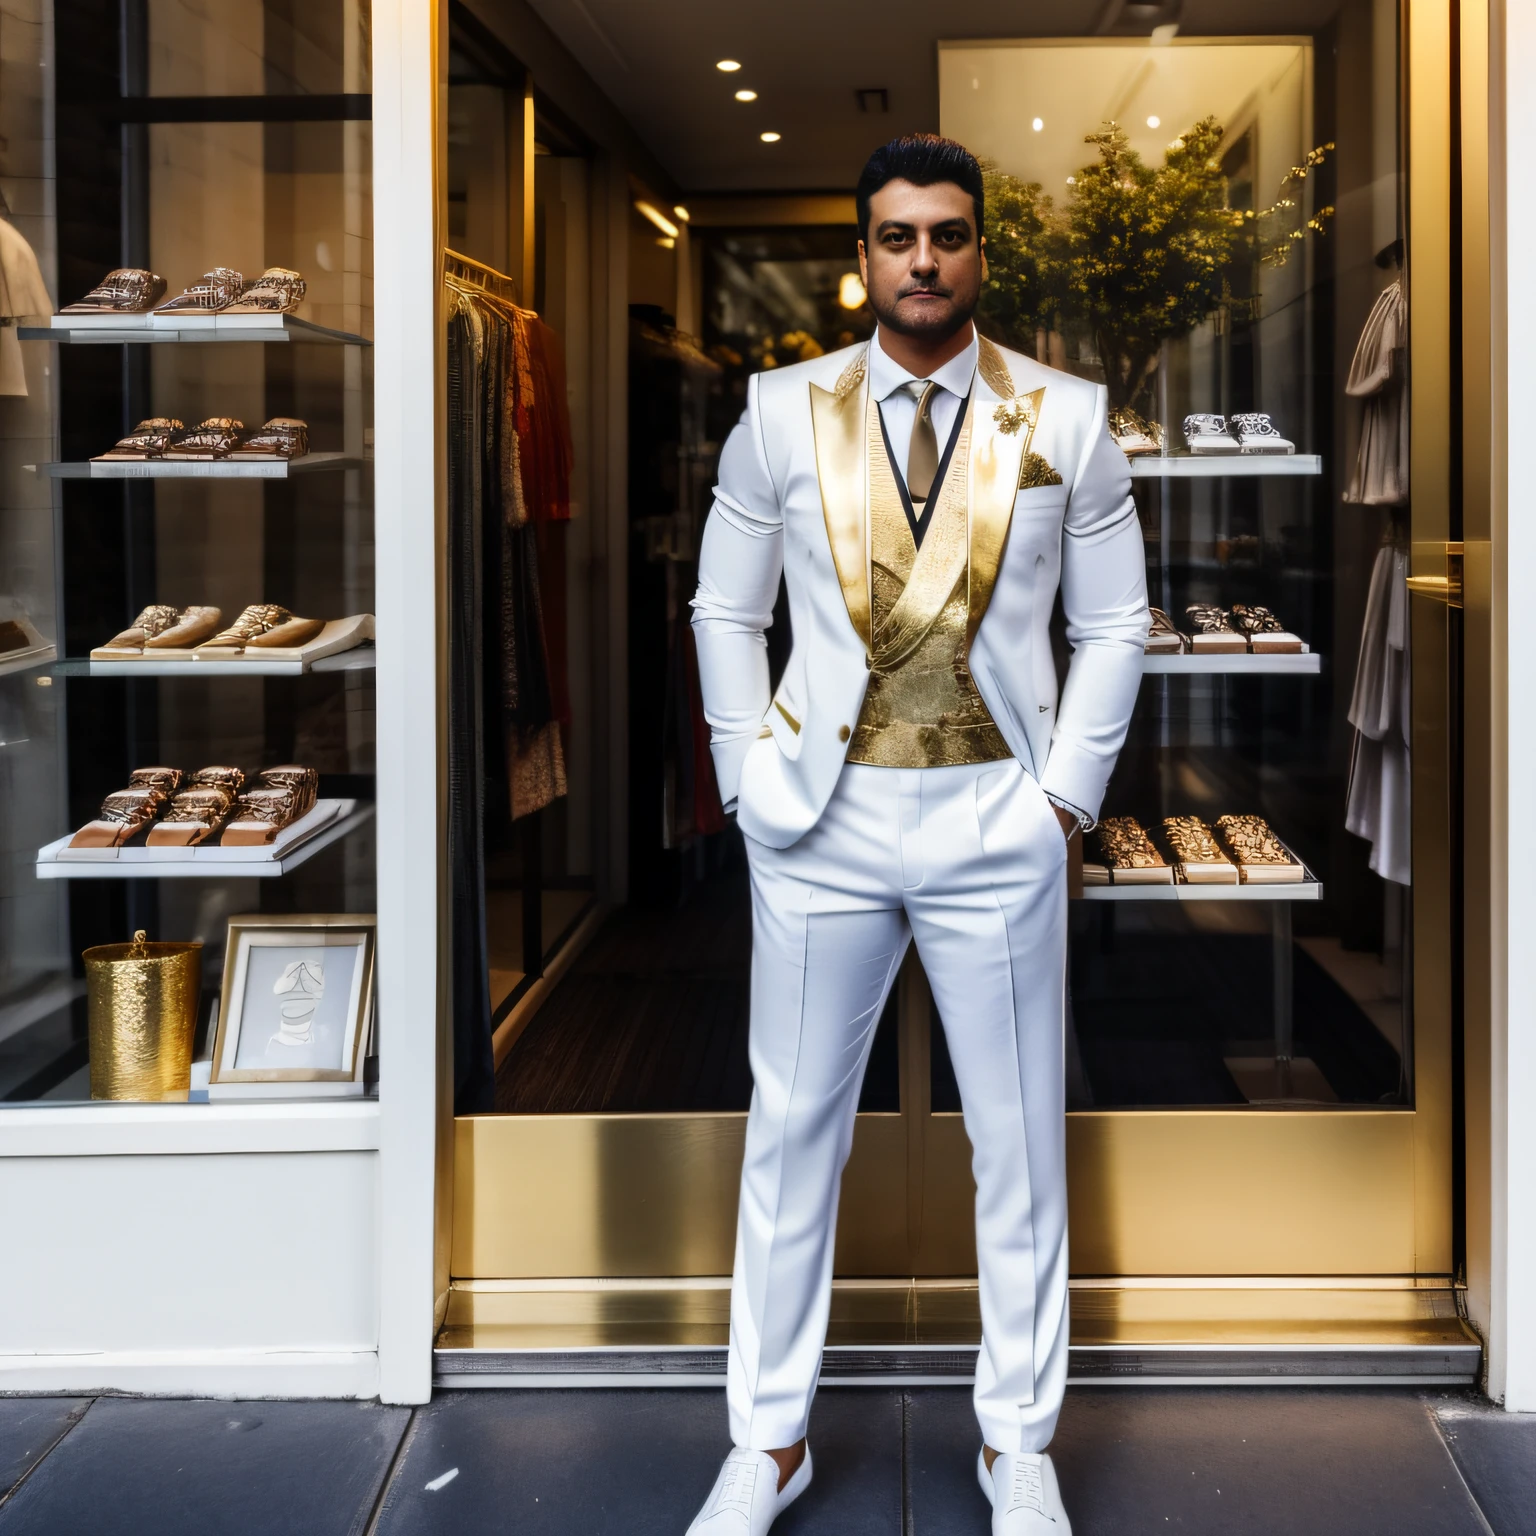 황혼 무렵 매장 앞을 내다보며 금색 액센트가 있는 흰색 사교 복장을 입고 길거리 상점 창문에 기대어 서 있는 전신 남성